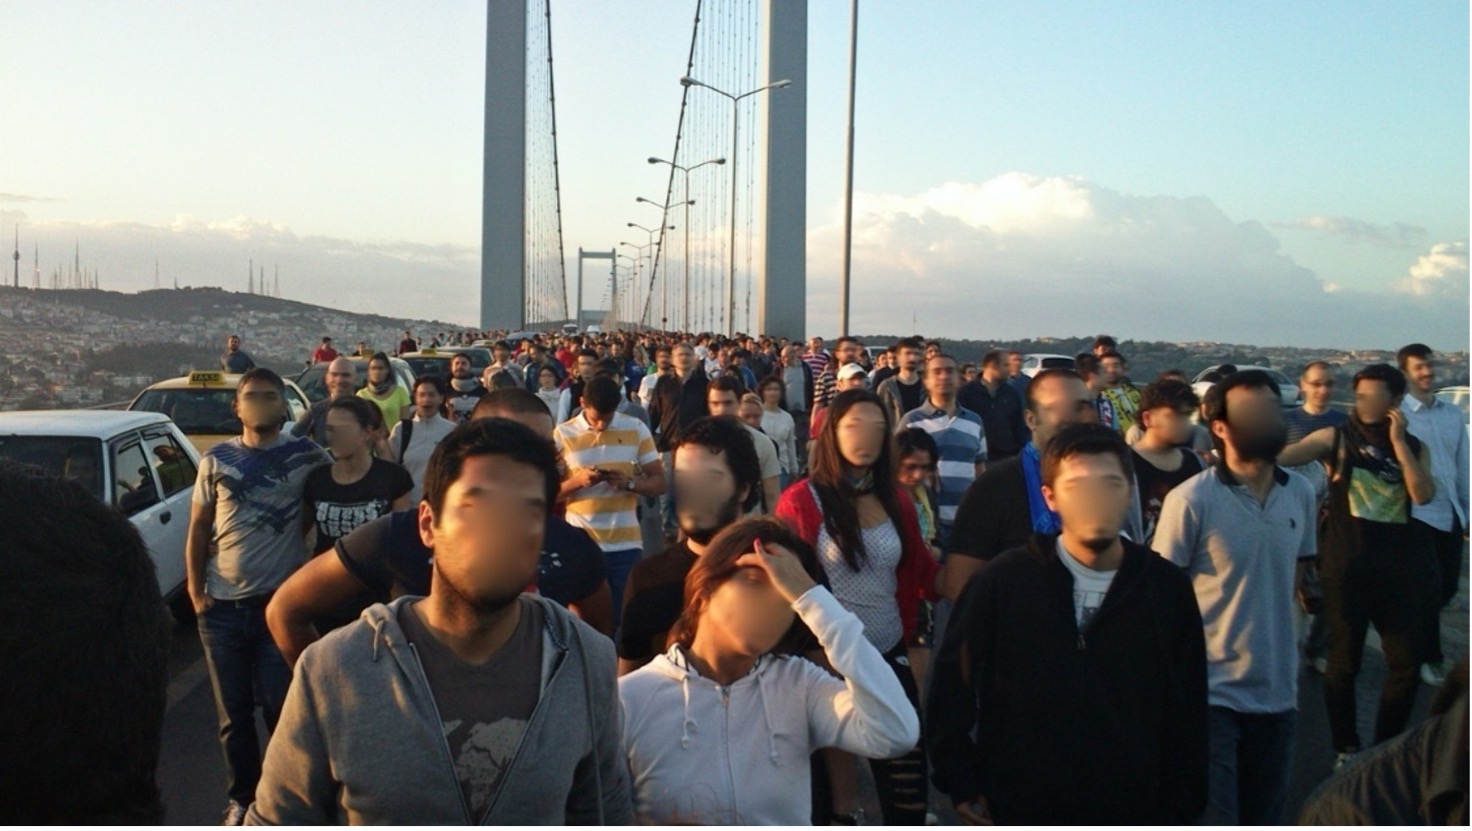 Resim 6: 1 Haziran 2013’te Boğaz Köprüsü’nde çekilen fotoğrafta, insanlar 01.00’dan beri Kadıköy’den buraya yürüyorlar (fotoğraf Ail Subway, Wikipedia)